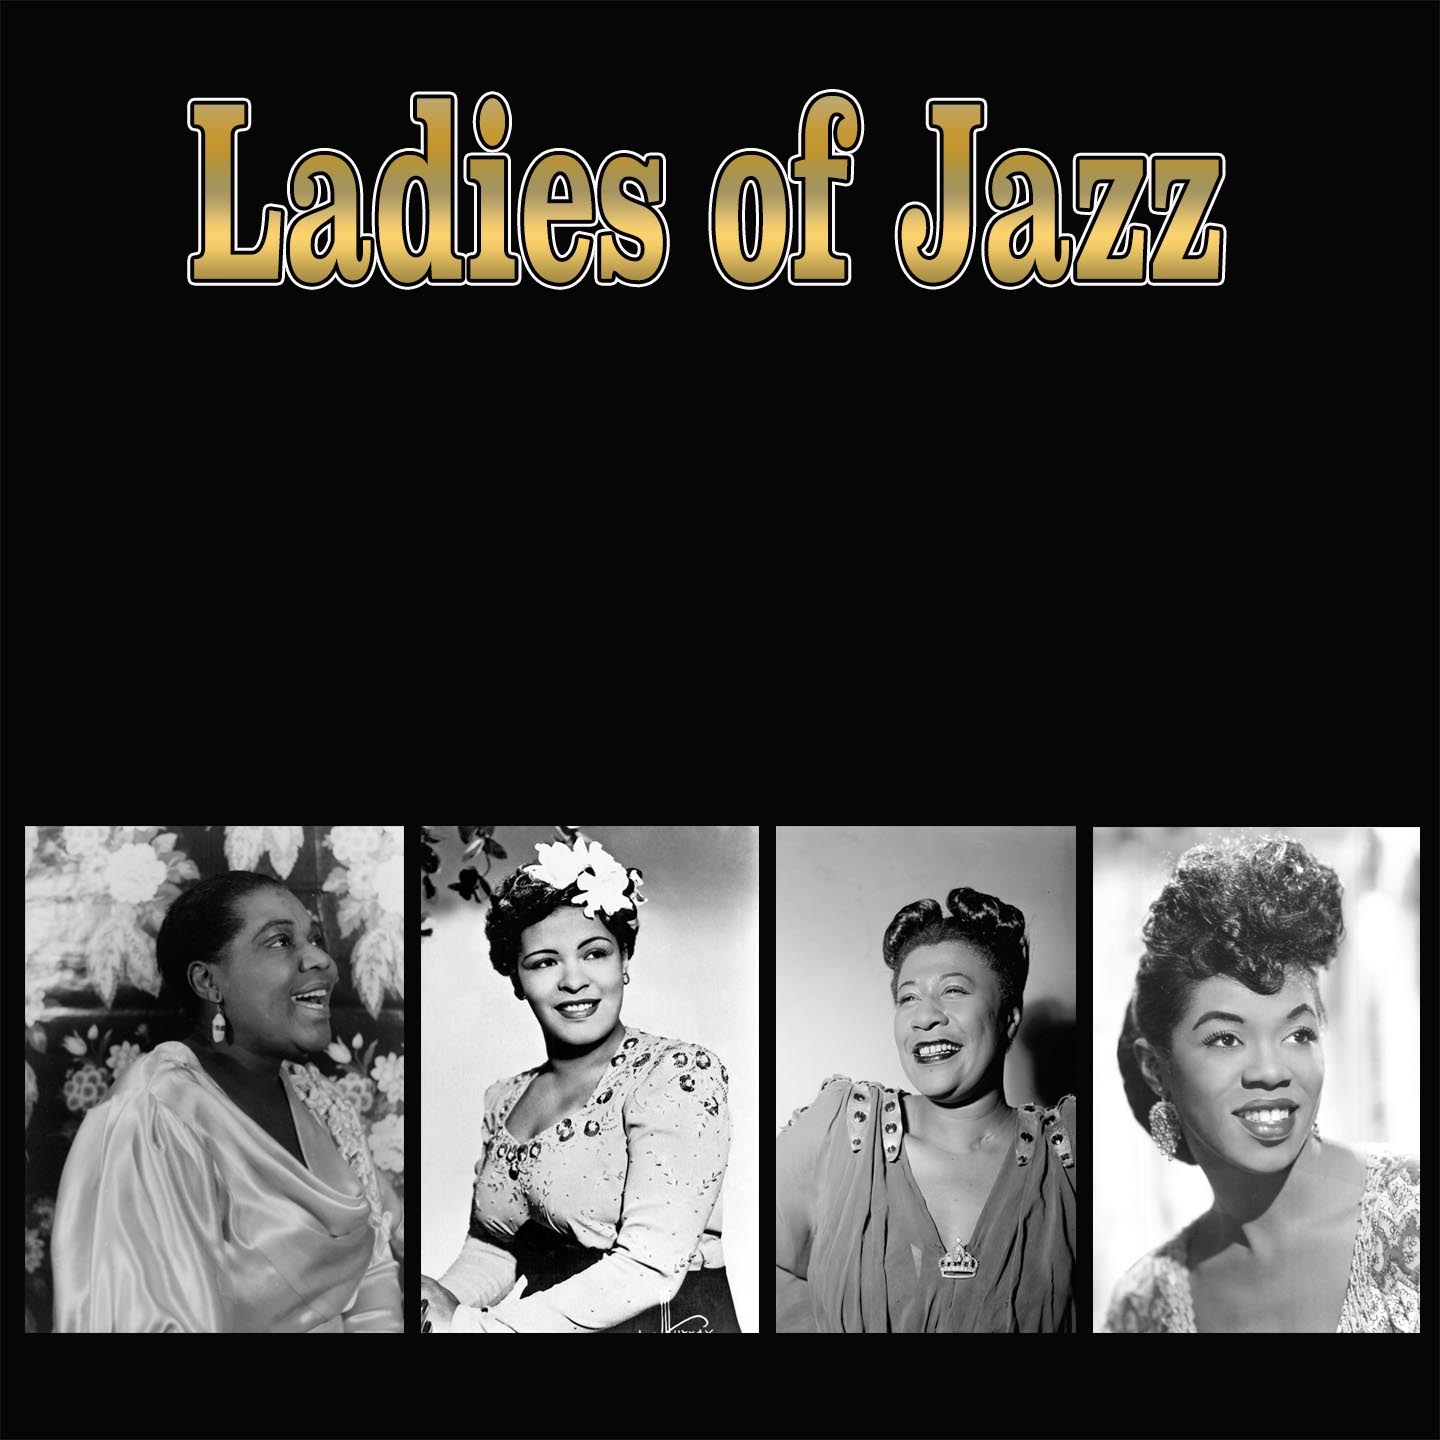 Ladies of Jazz